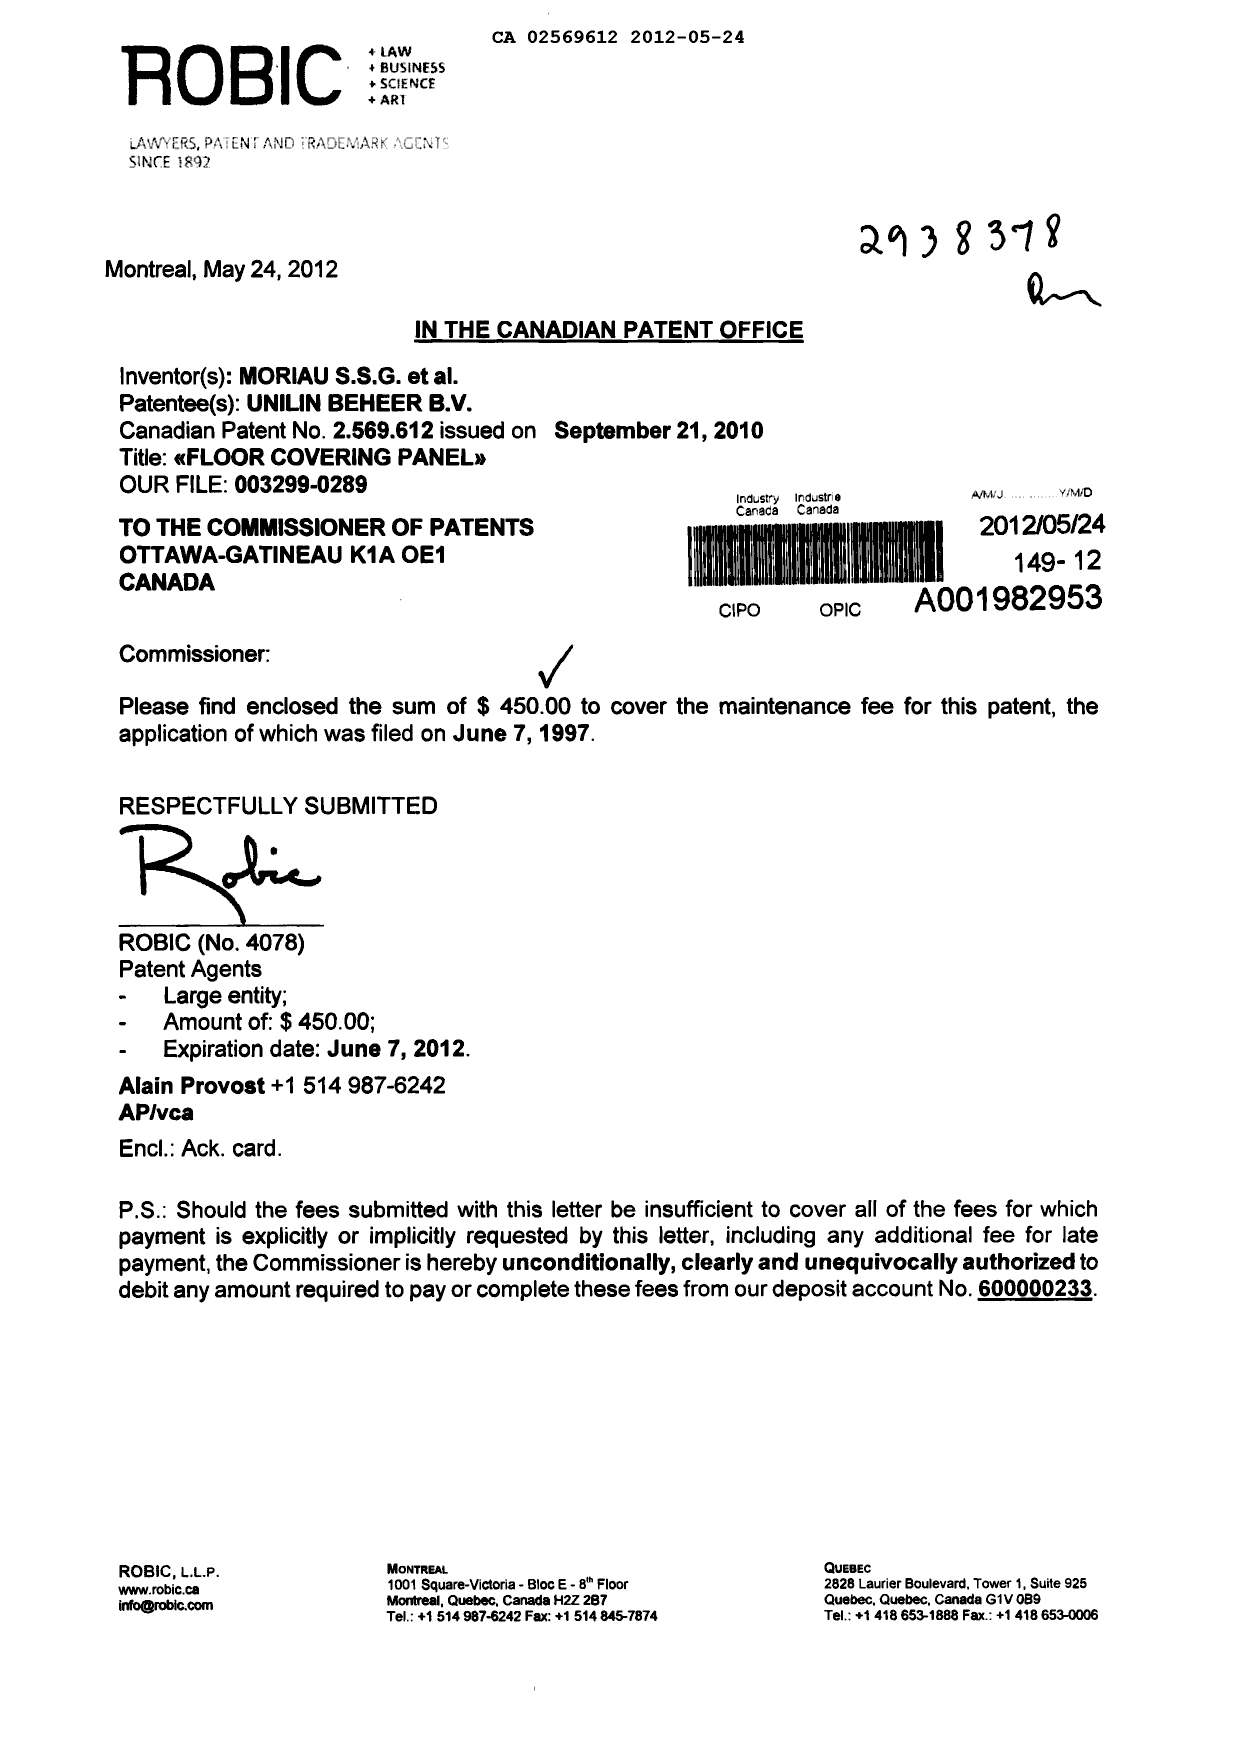 Document de brevet canadien 2569612. Taxes 20120524. Image 1 de 1